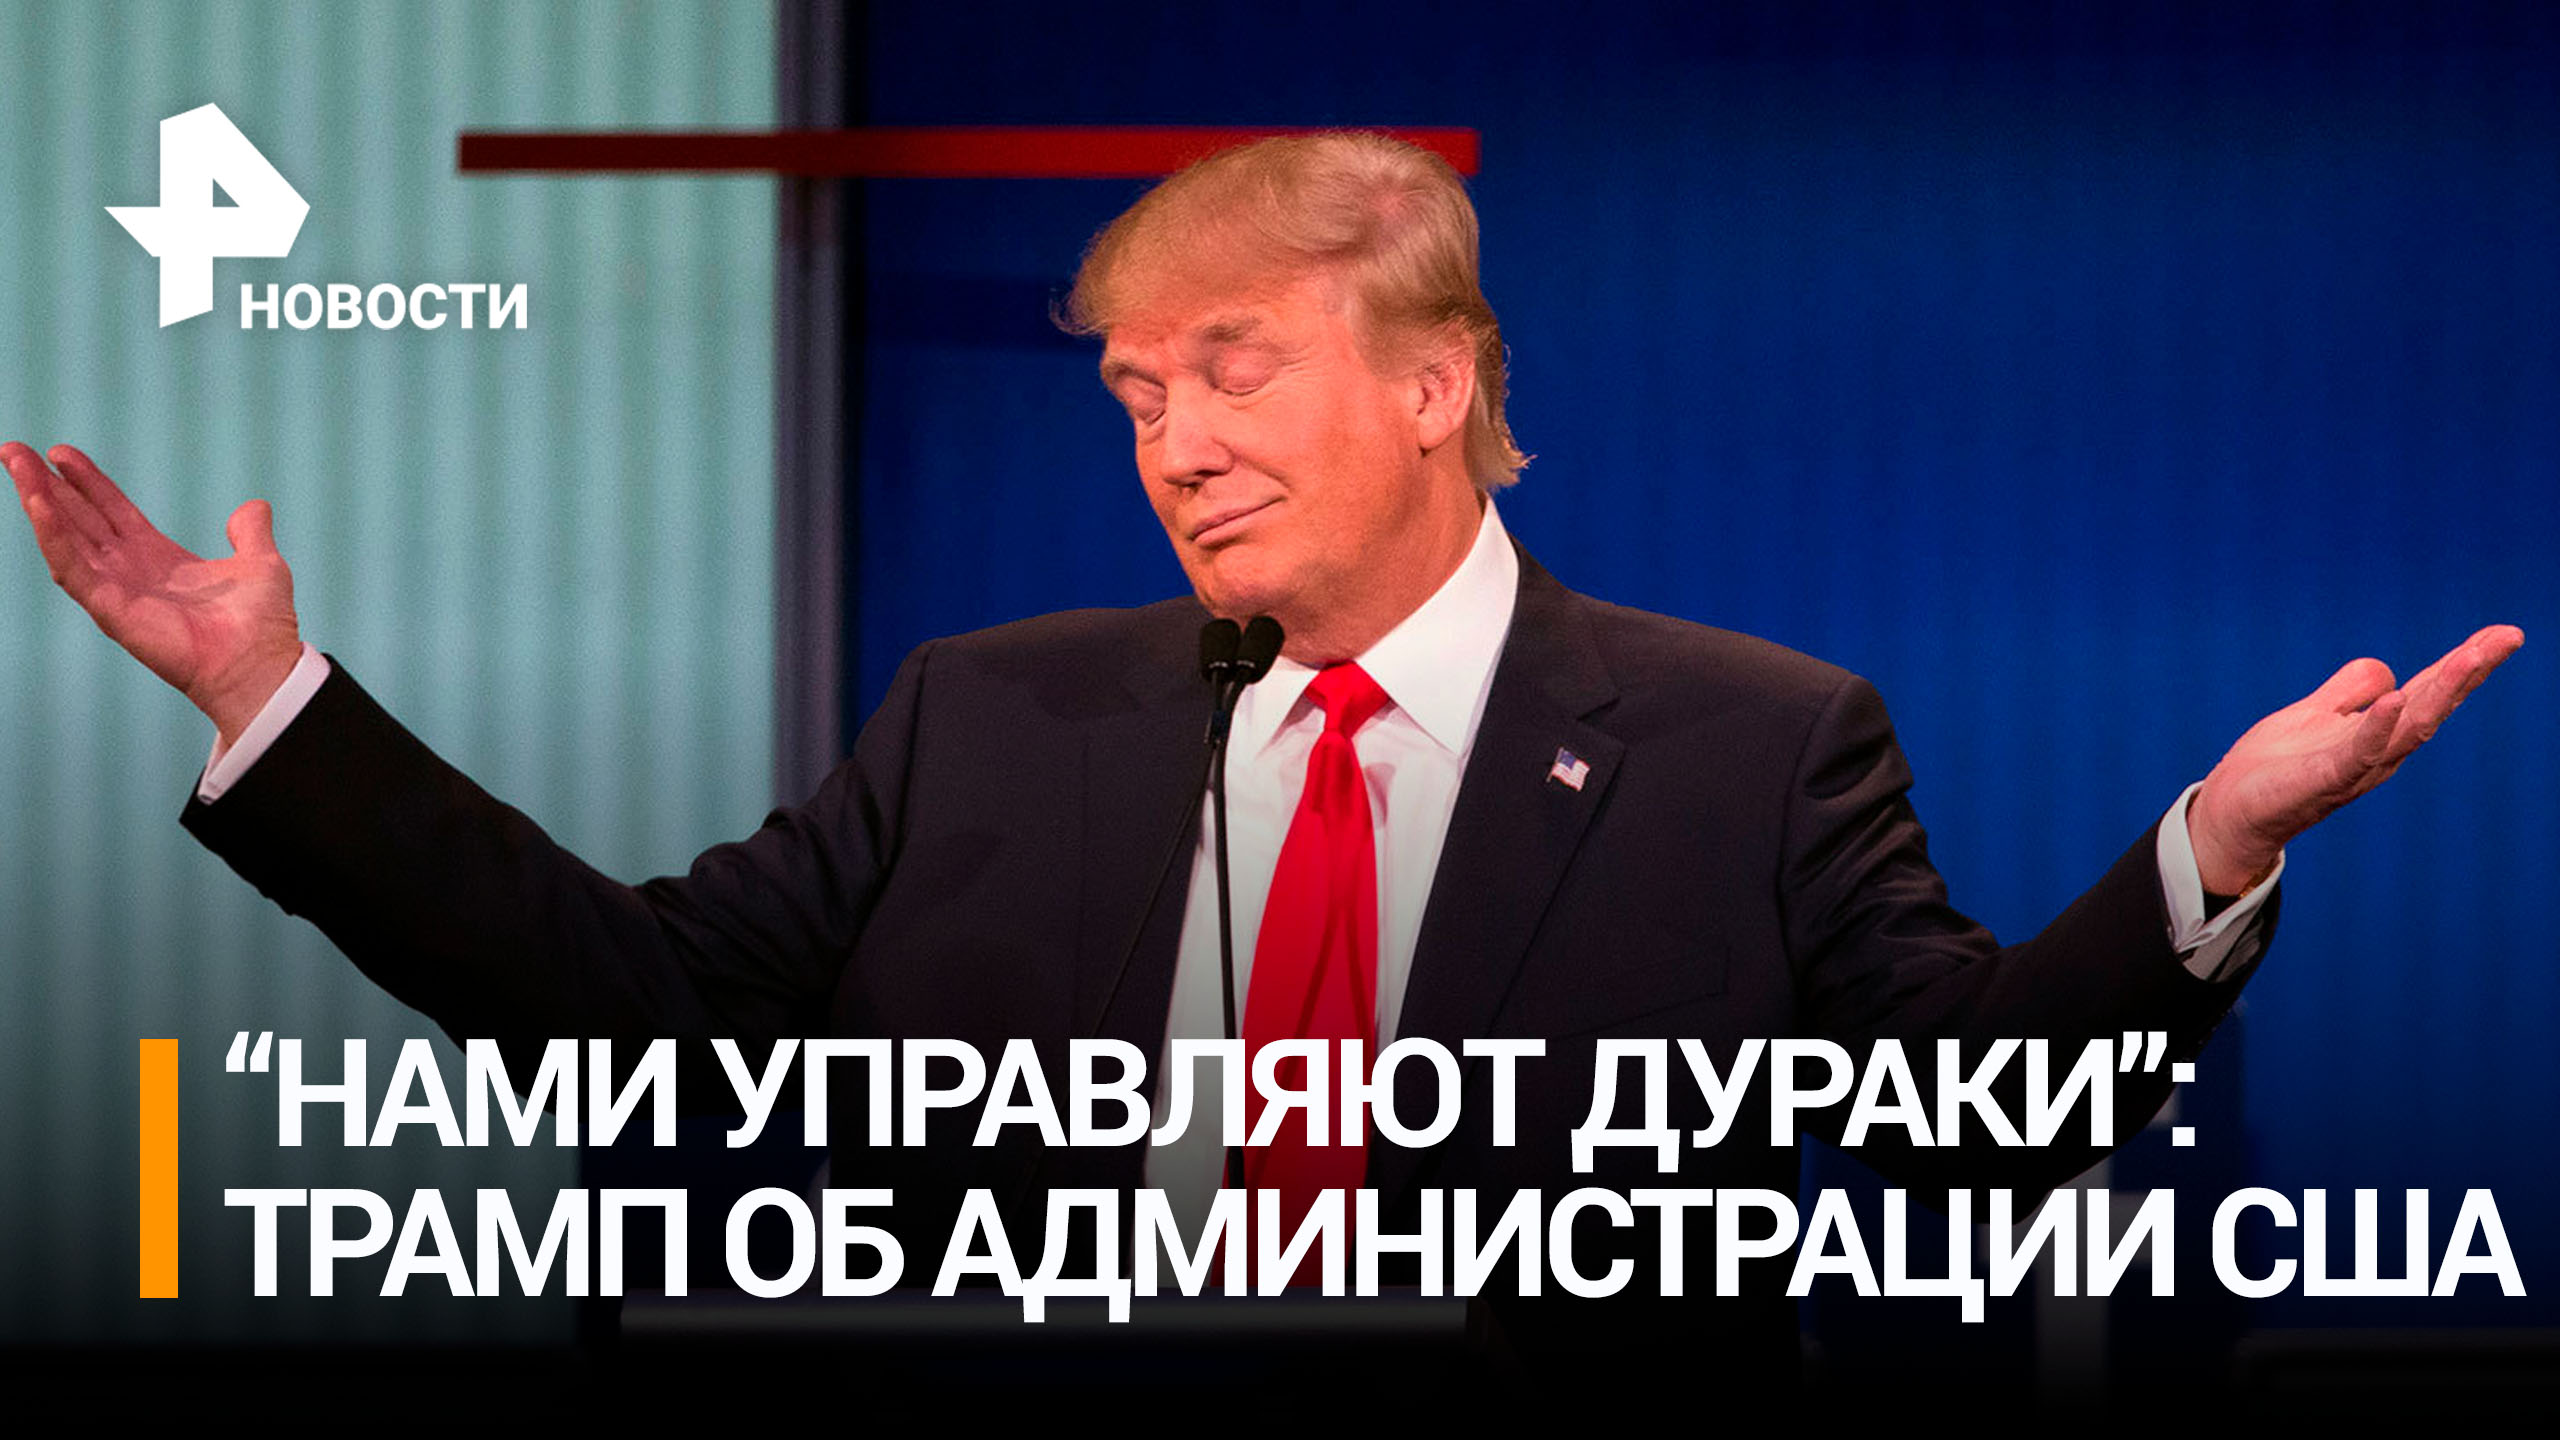 Трамп заявил, что США управляют дураки / РЕН Новости